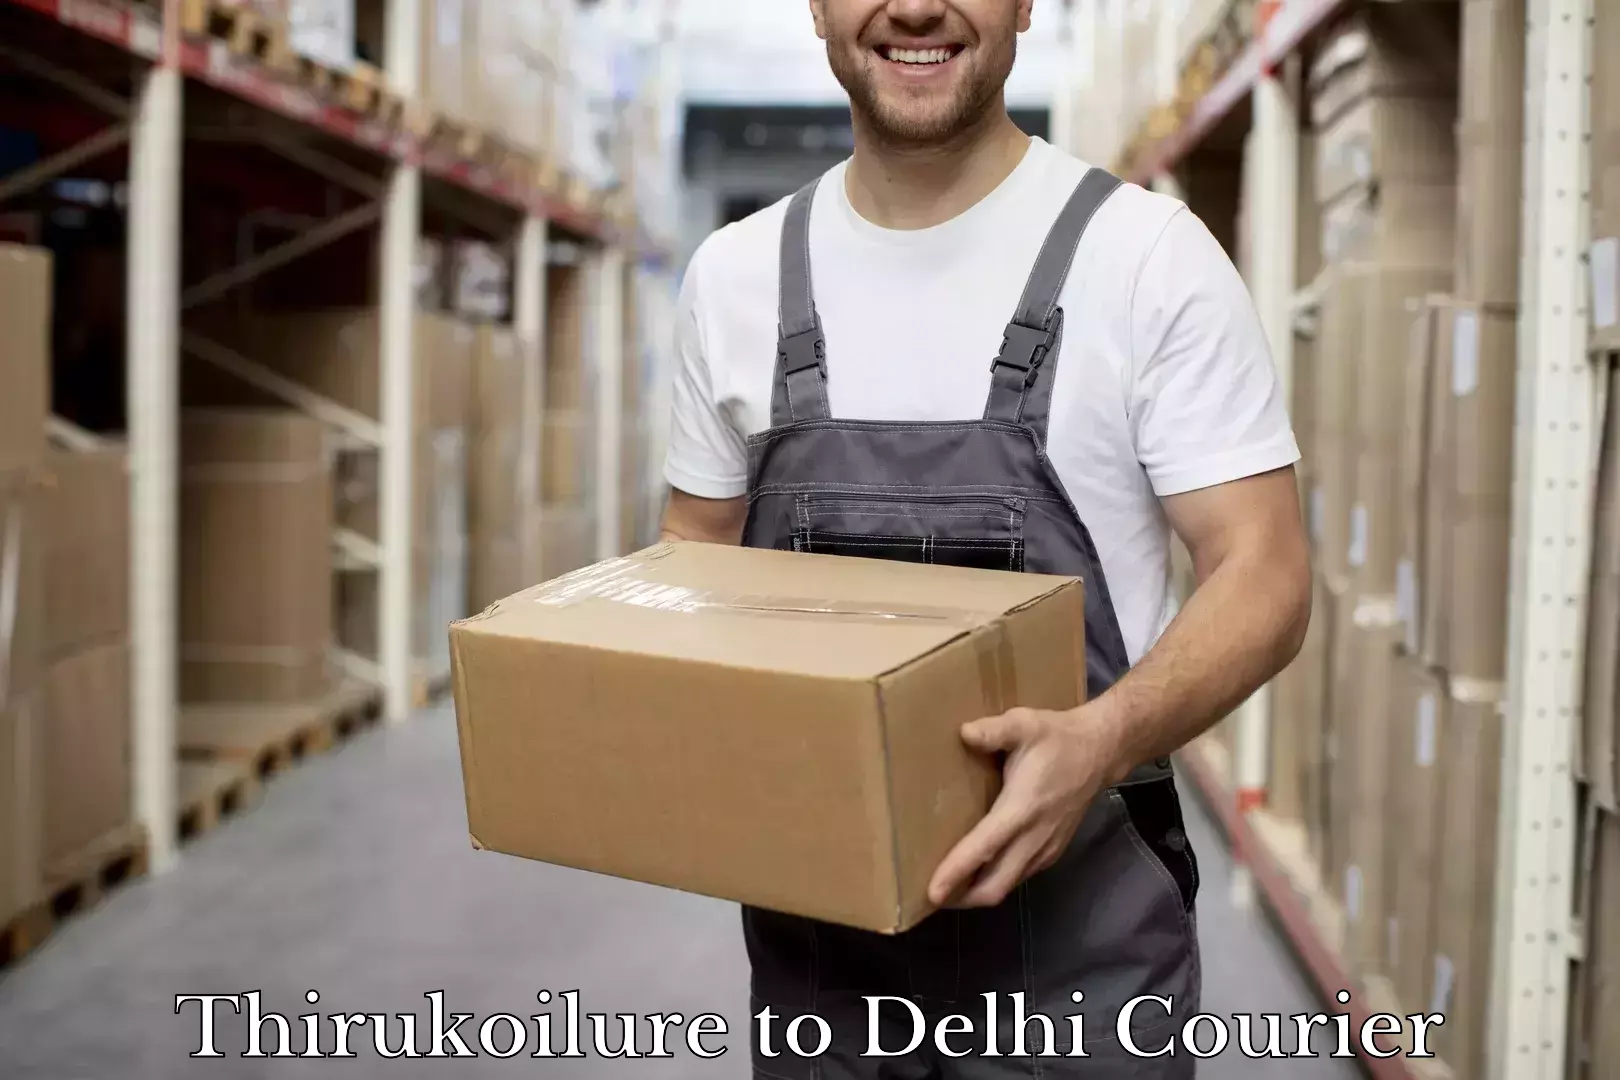 Baggage relocation service Thirukoilure to Jawaharlal Nehru University New Delhi